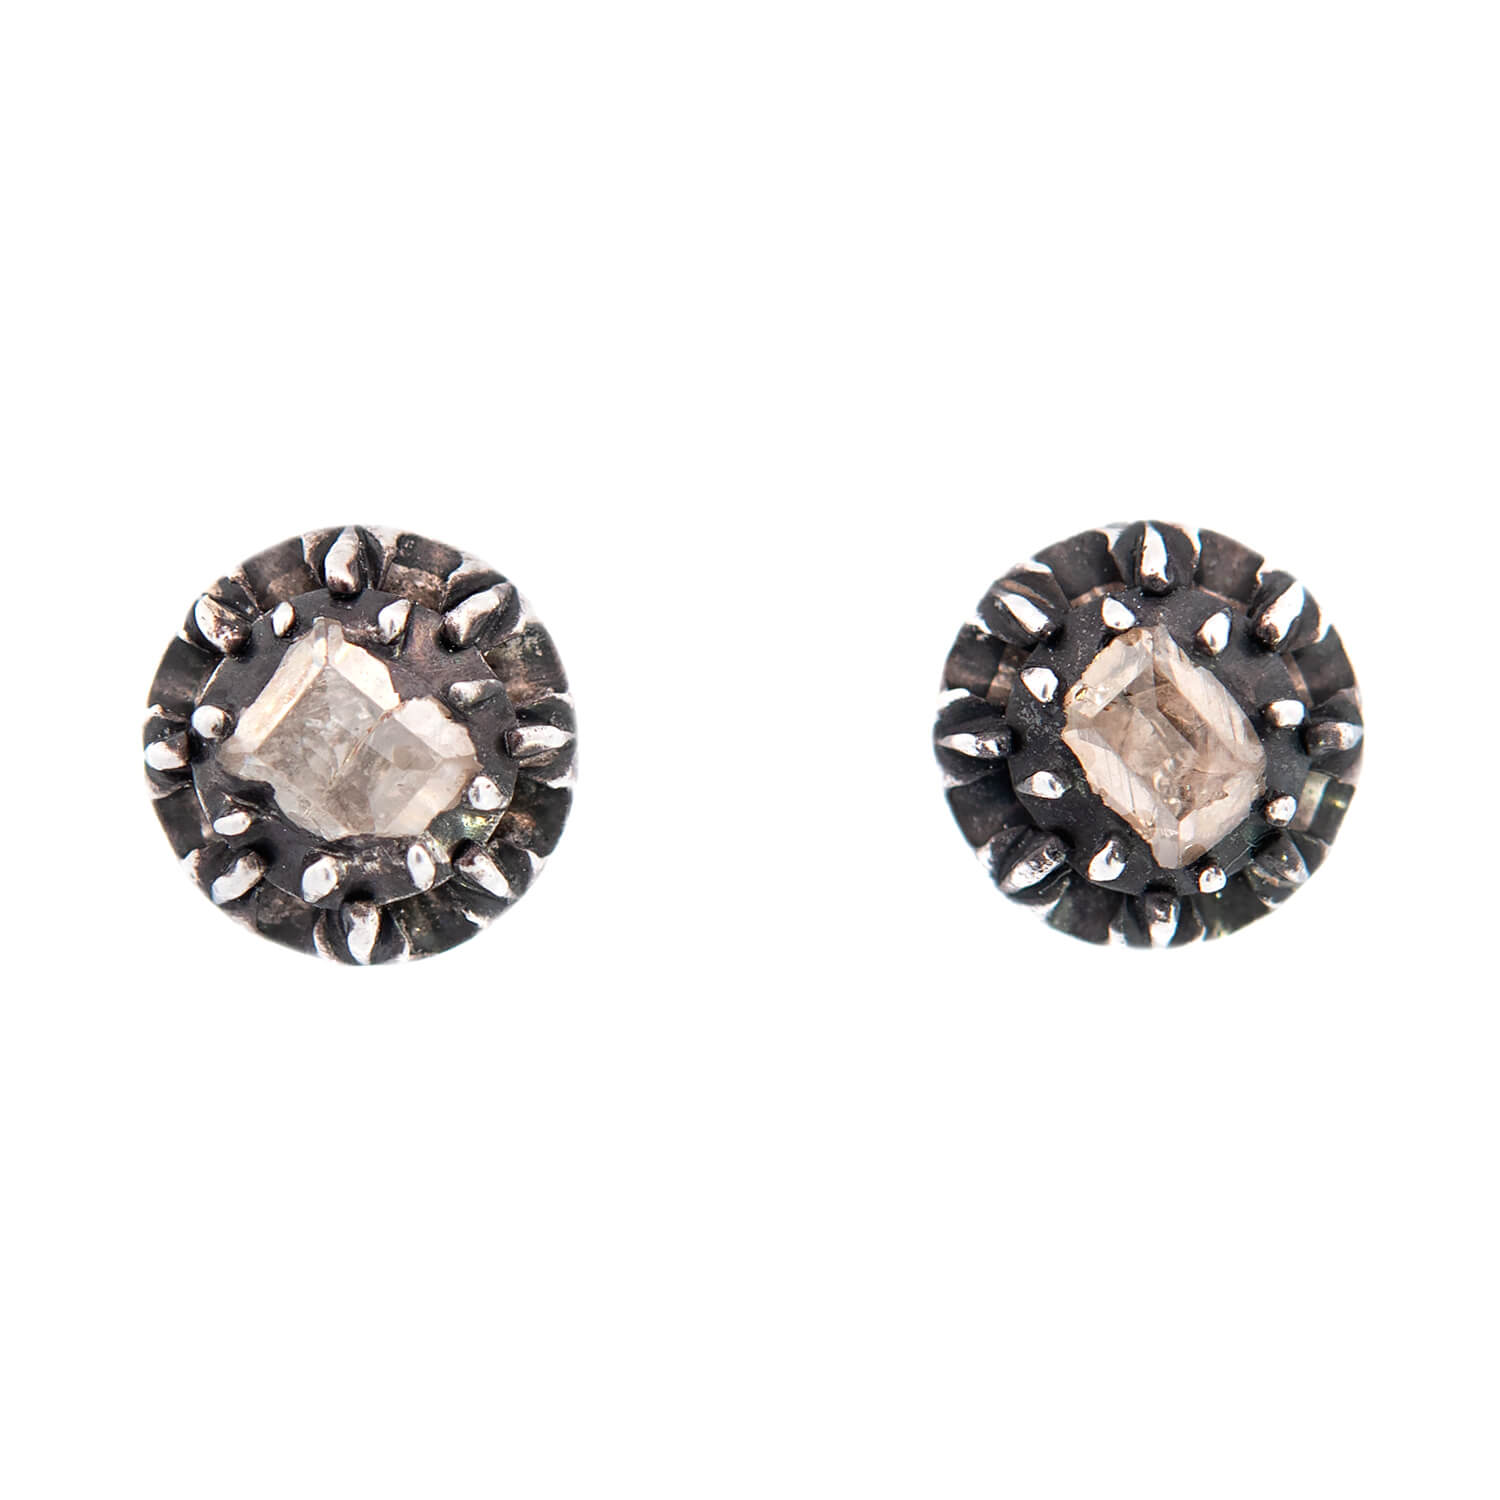 Victorian 14k/Sterling Silver Table Cut Diamond Stud Earrings